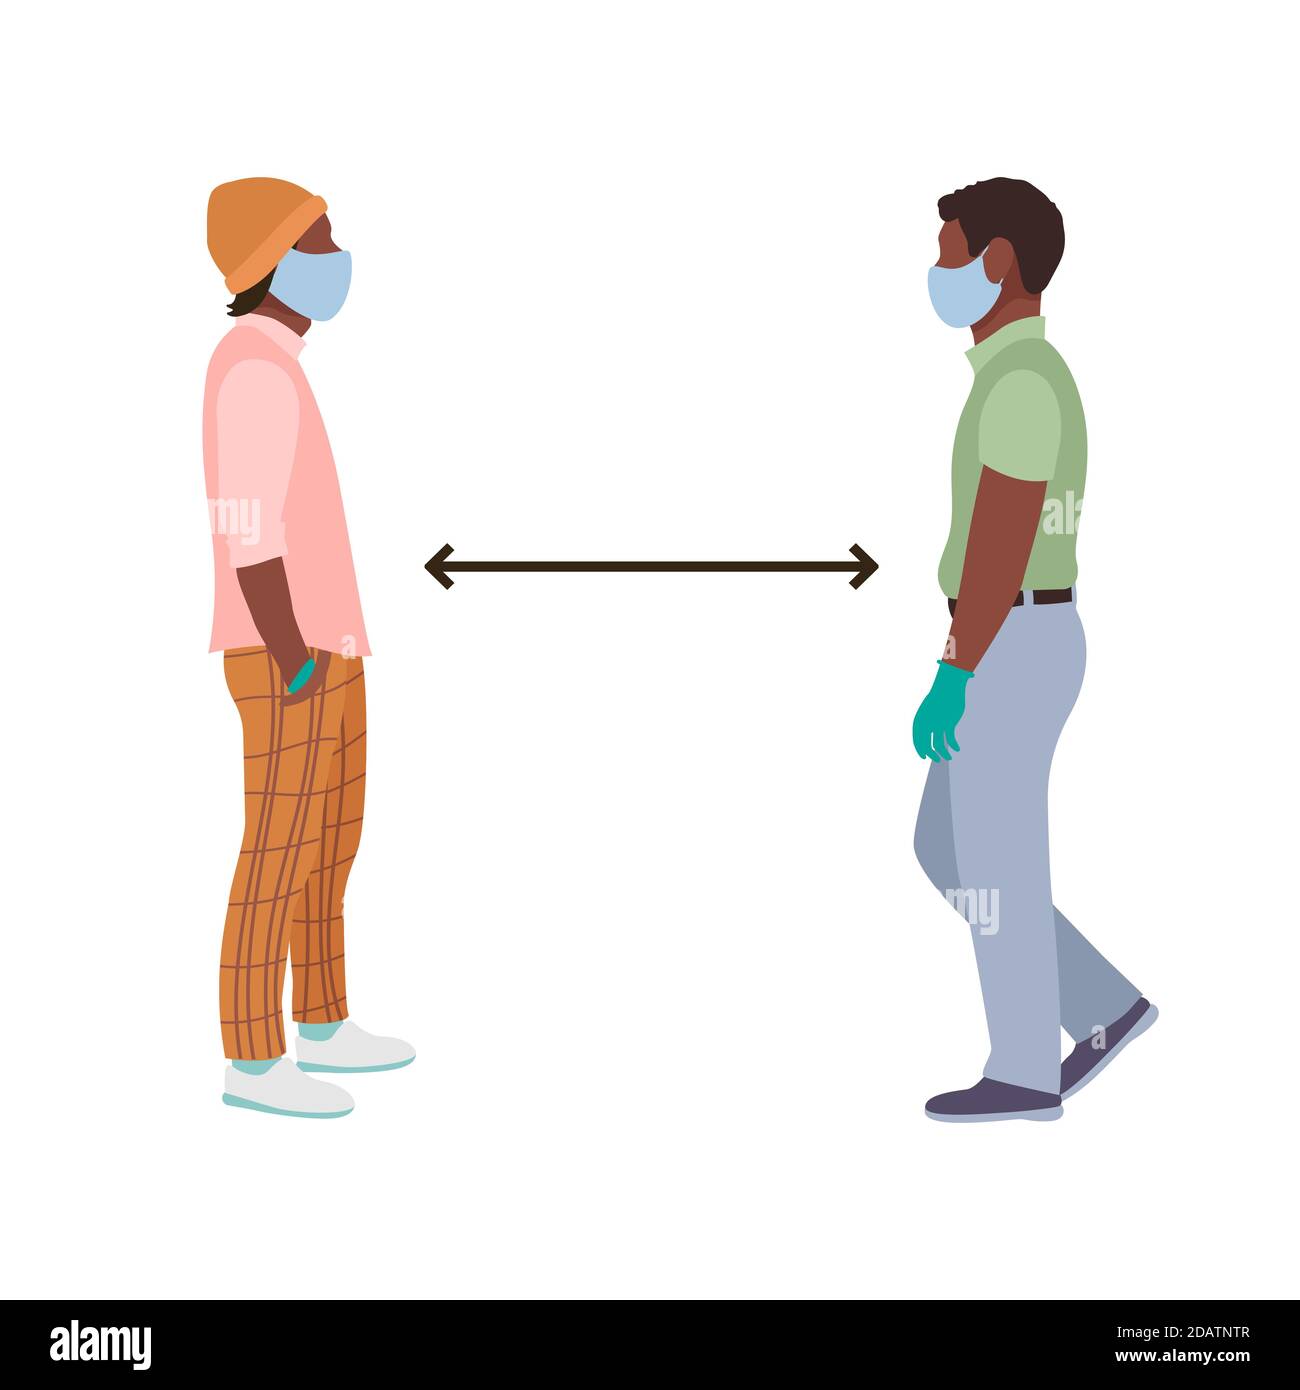 Soziale Distanz zwei schwarze afroamerikanische Männer mit medizinischen Masken und Handschuhen stehen vor einer vollen Höhe. Flache Vektor-Illustration Stock Vektor